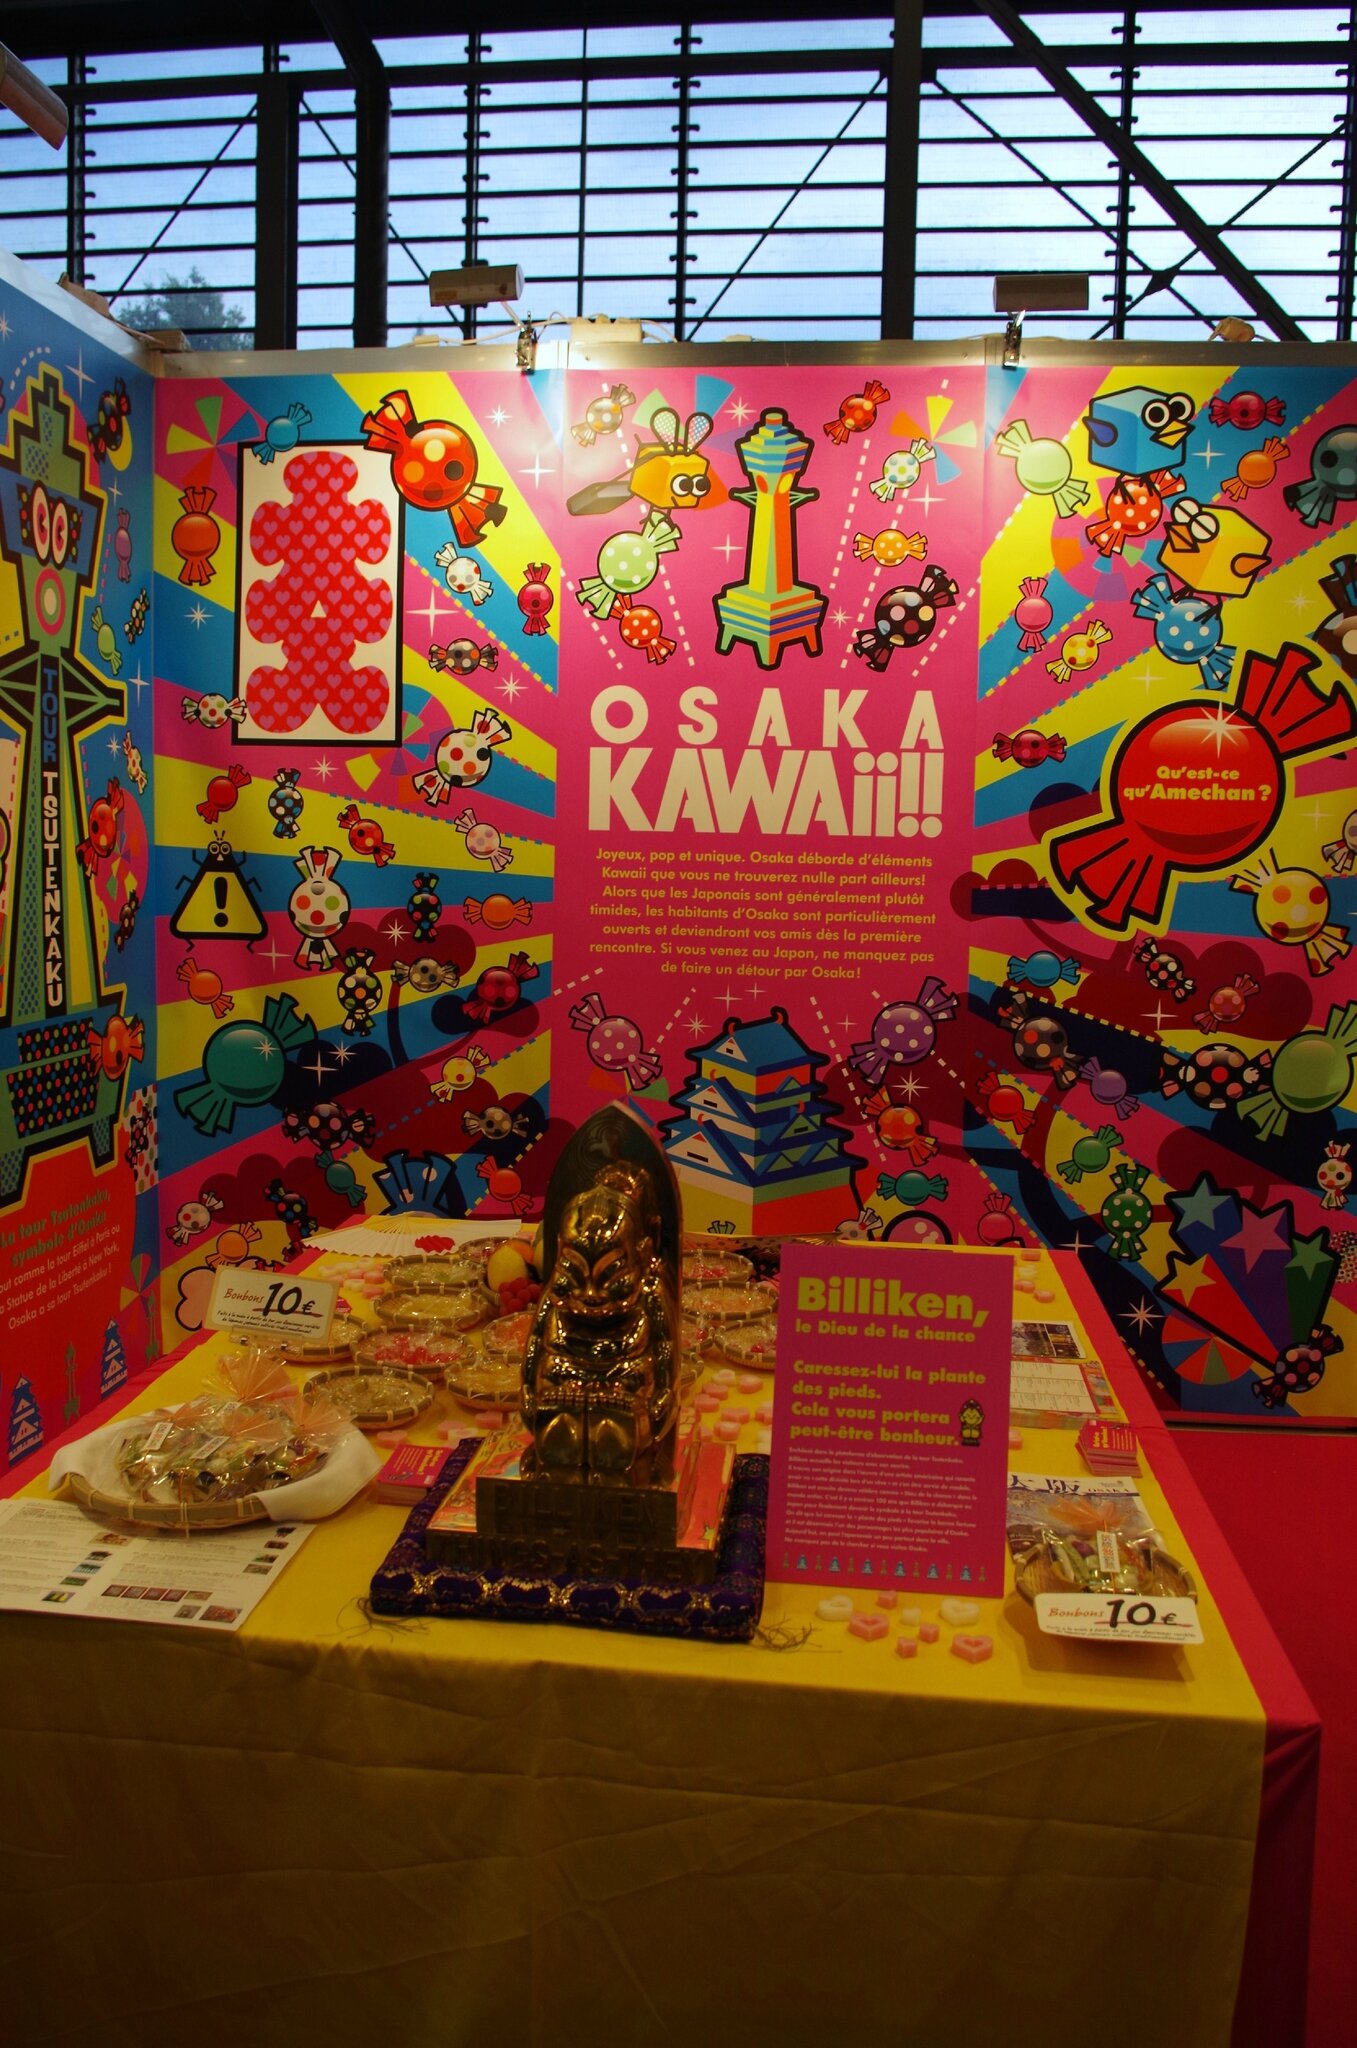 Les couleurs flashy du stand Osaka dans Kawaii Area